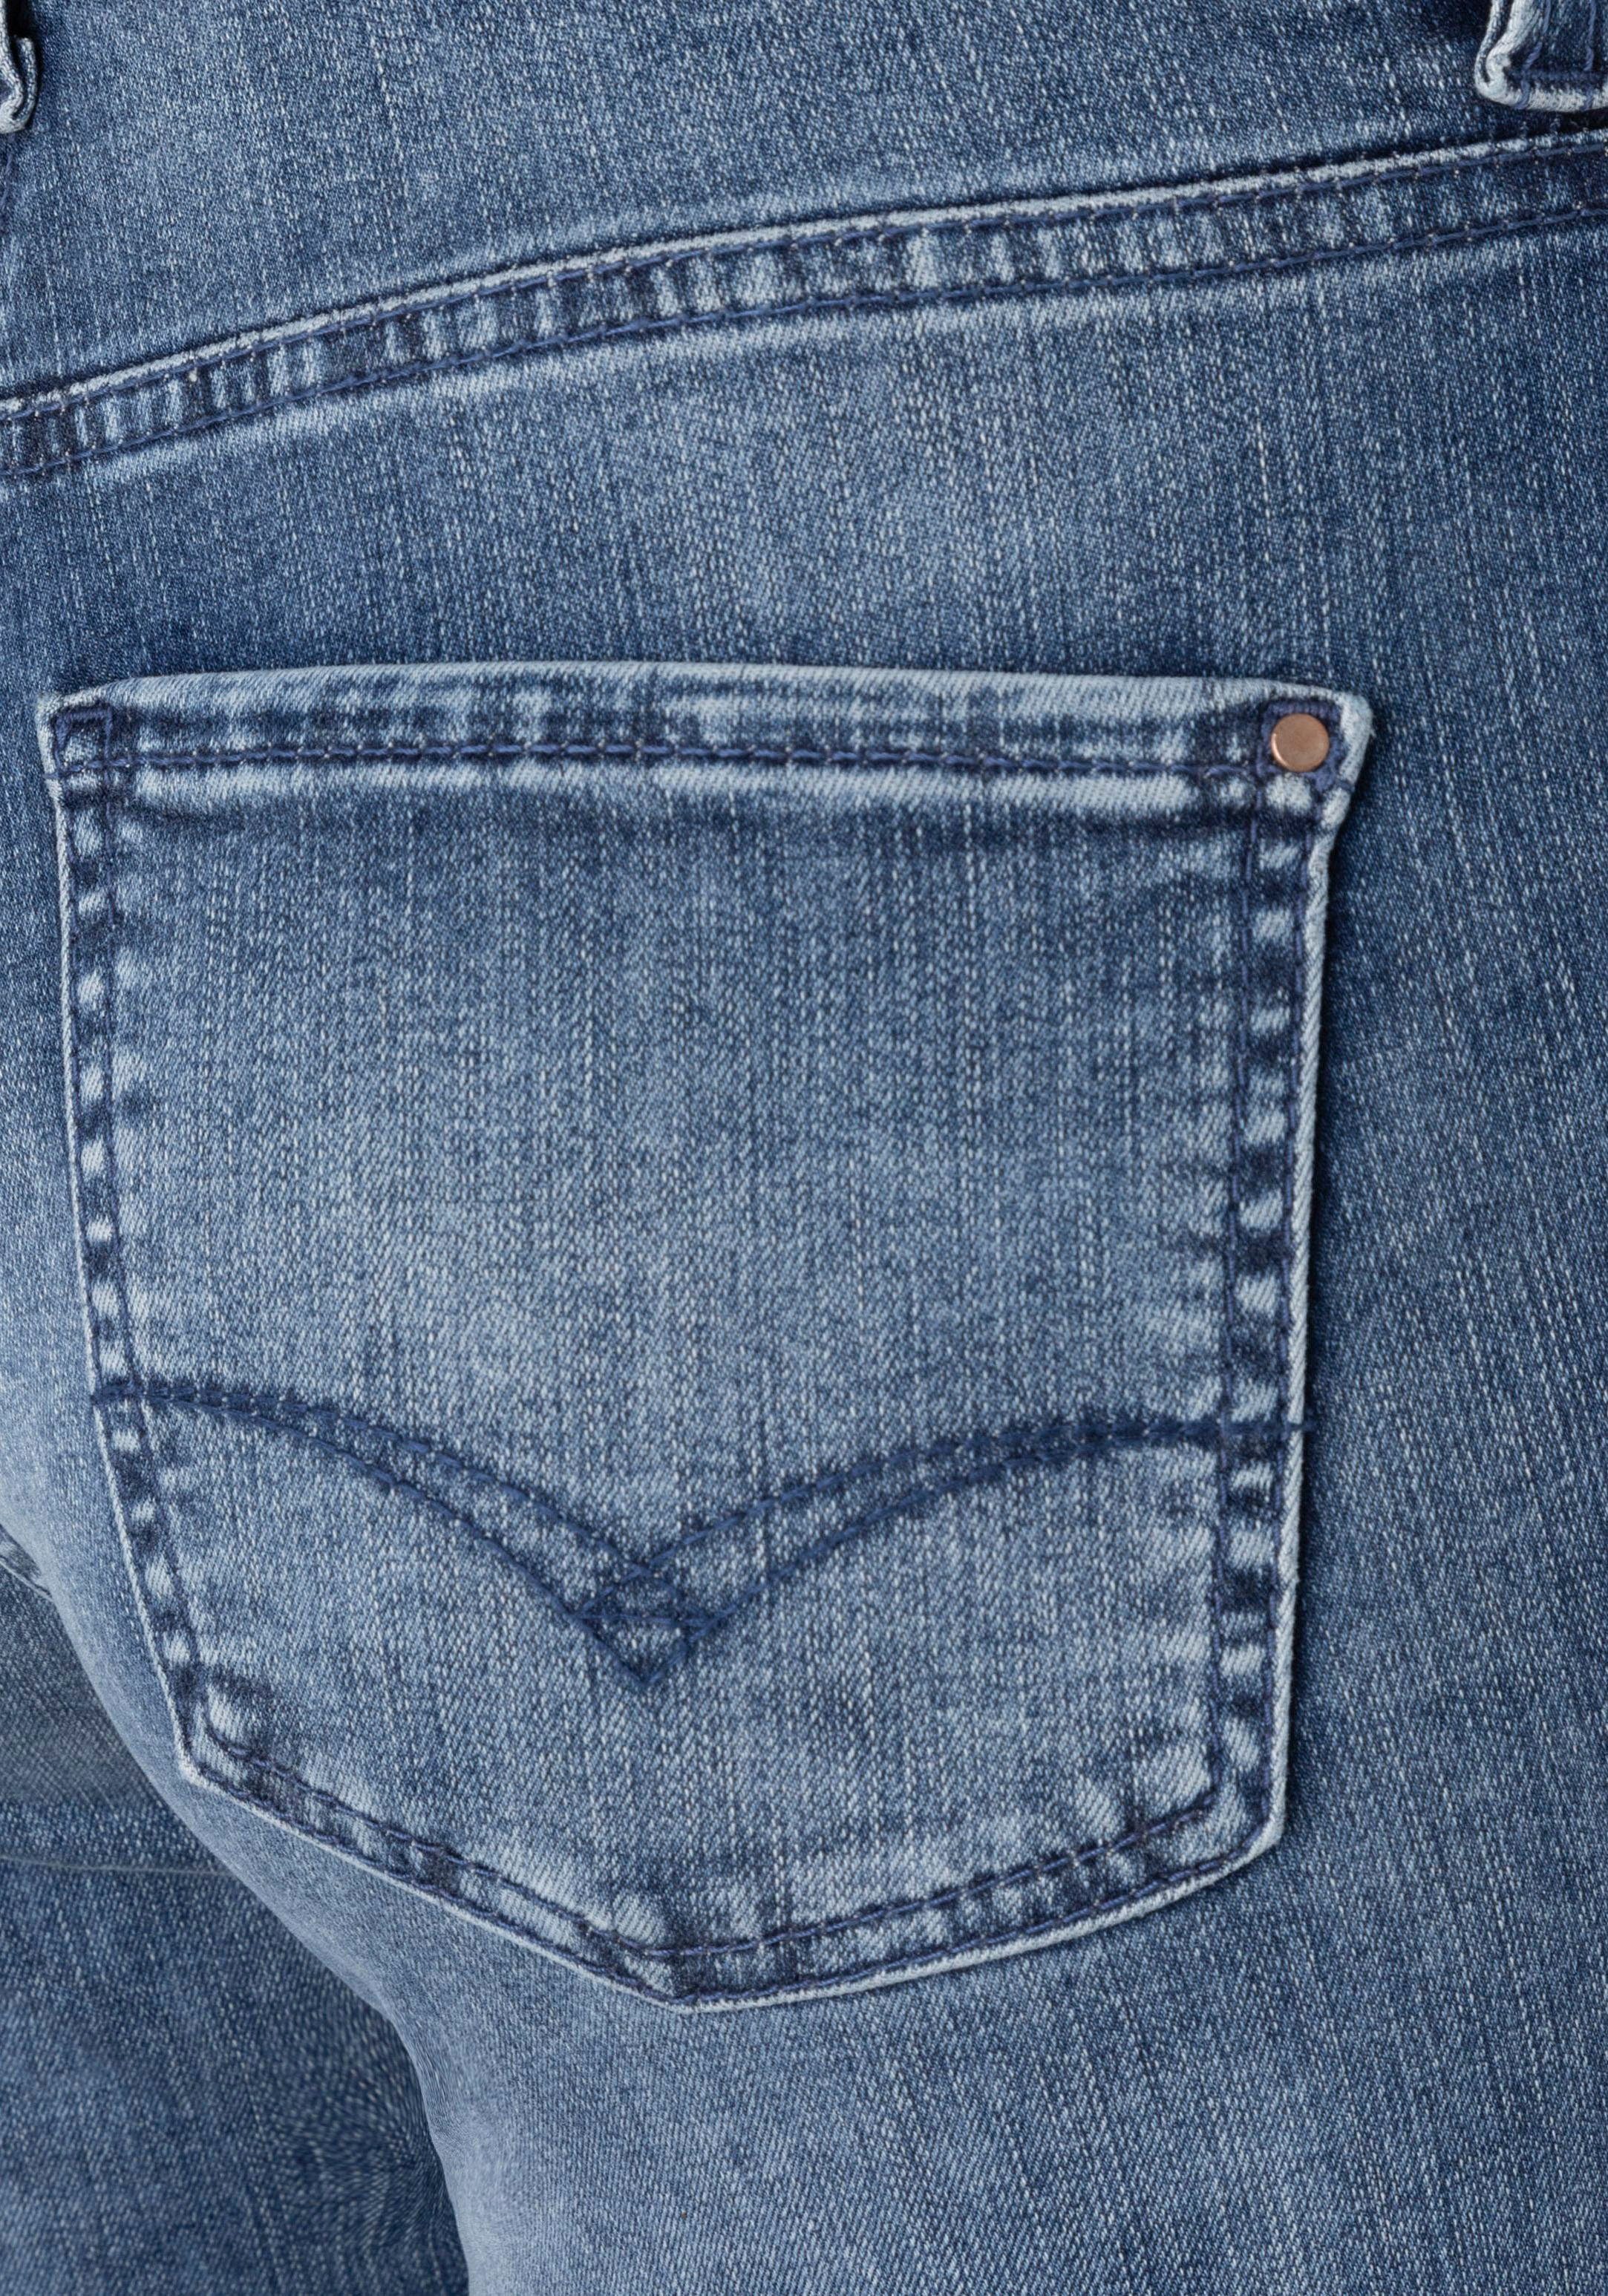 3/4-Jeans verkürzt Dream modisch blue MAC Kick und washed Saum leicht ausgestellt dark